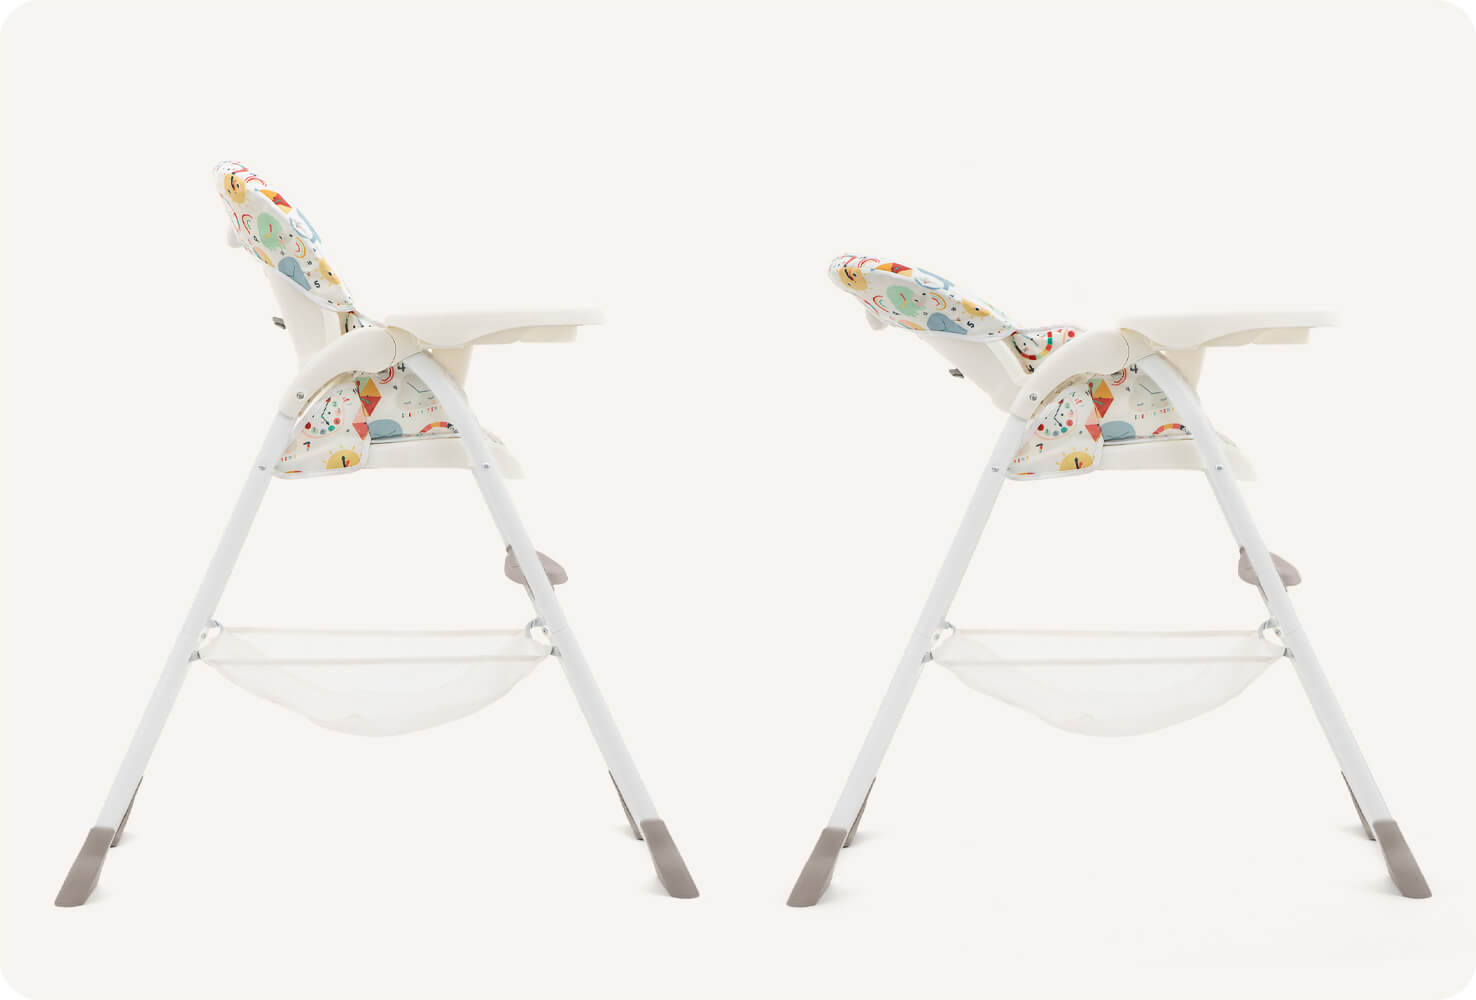   Deux chaises hautes Joie dans un imprimé multicolore représentant des cadrans d’horloges, animaux et formes géométriques de dessin animé, en vue latérale. L’une est en position verticale, l’autre en position inclinée pour indiquer la fonction d’inclinai